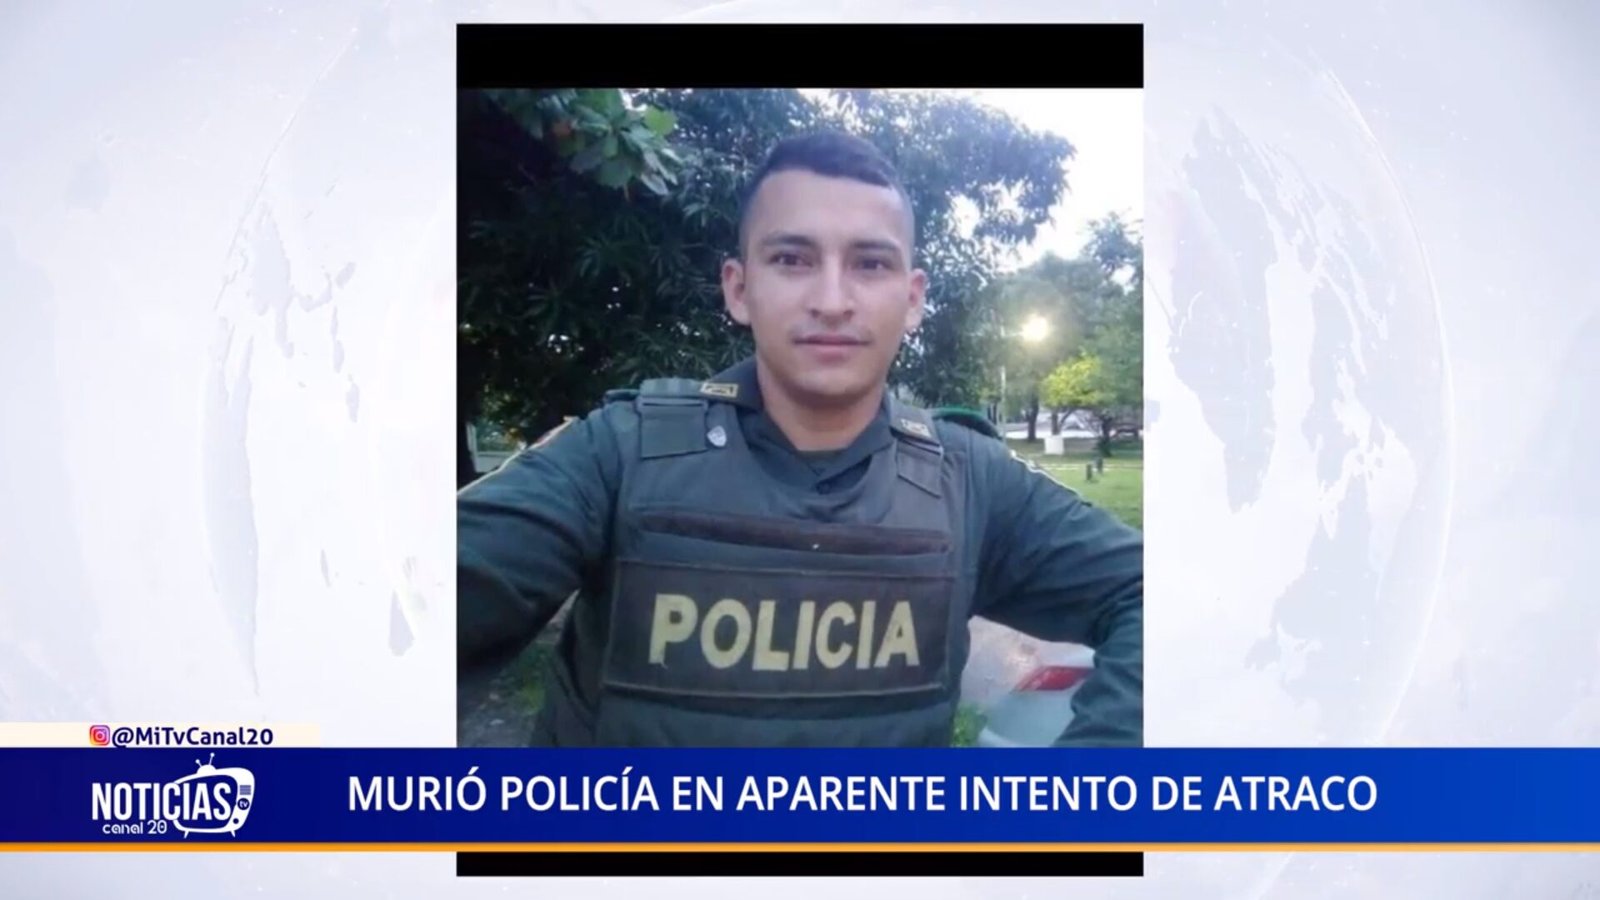 MURIÓ POLICÍA EN APARENTE INTENTO DE ATRACO